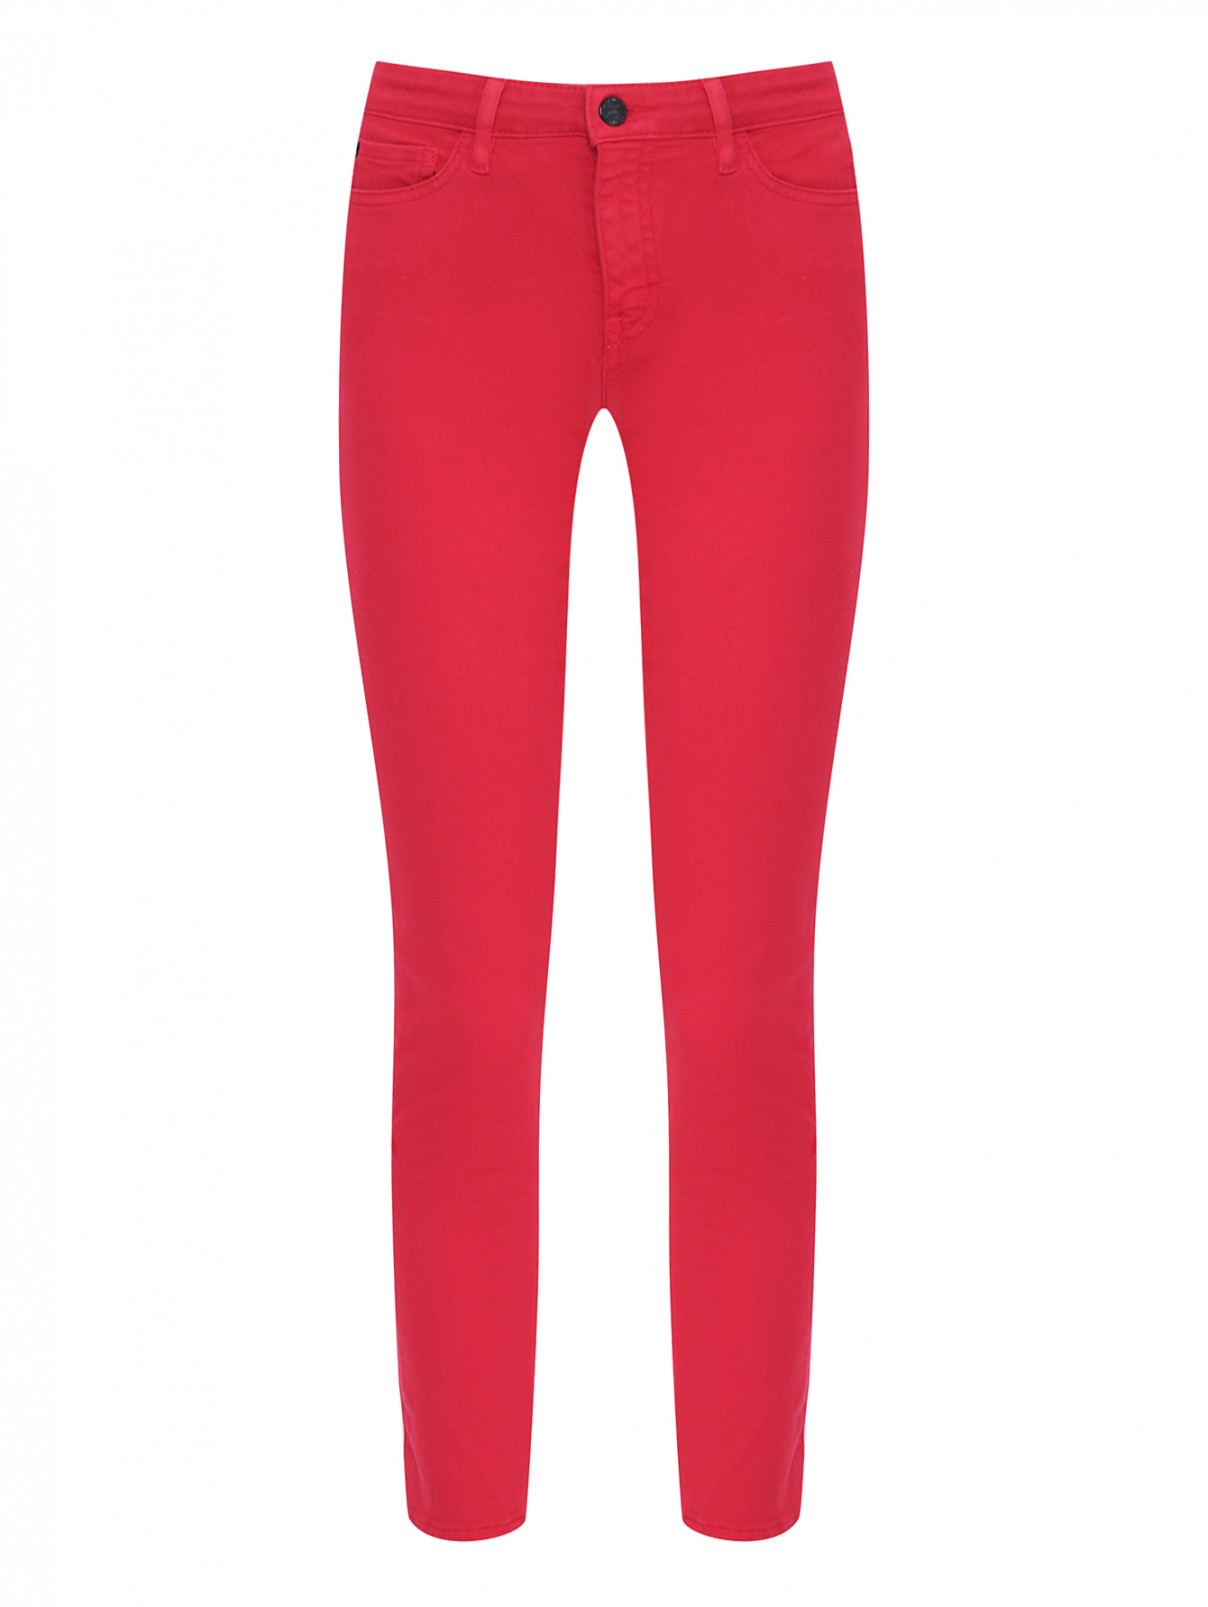 Однотонные джинсы из хлопка Love Moschino  –  Общий вид  – Цвет:  Красный